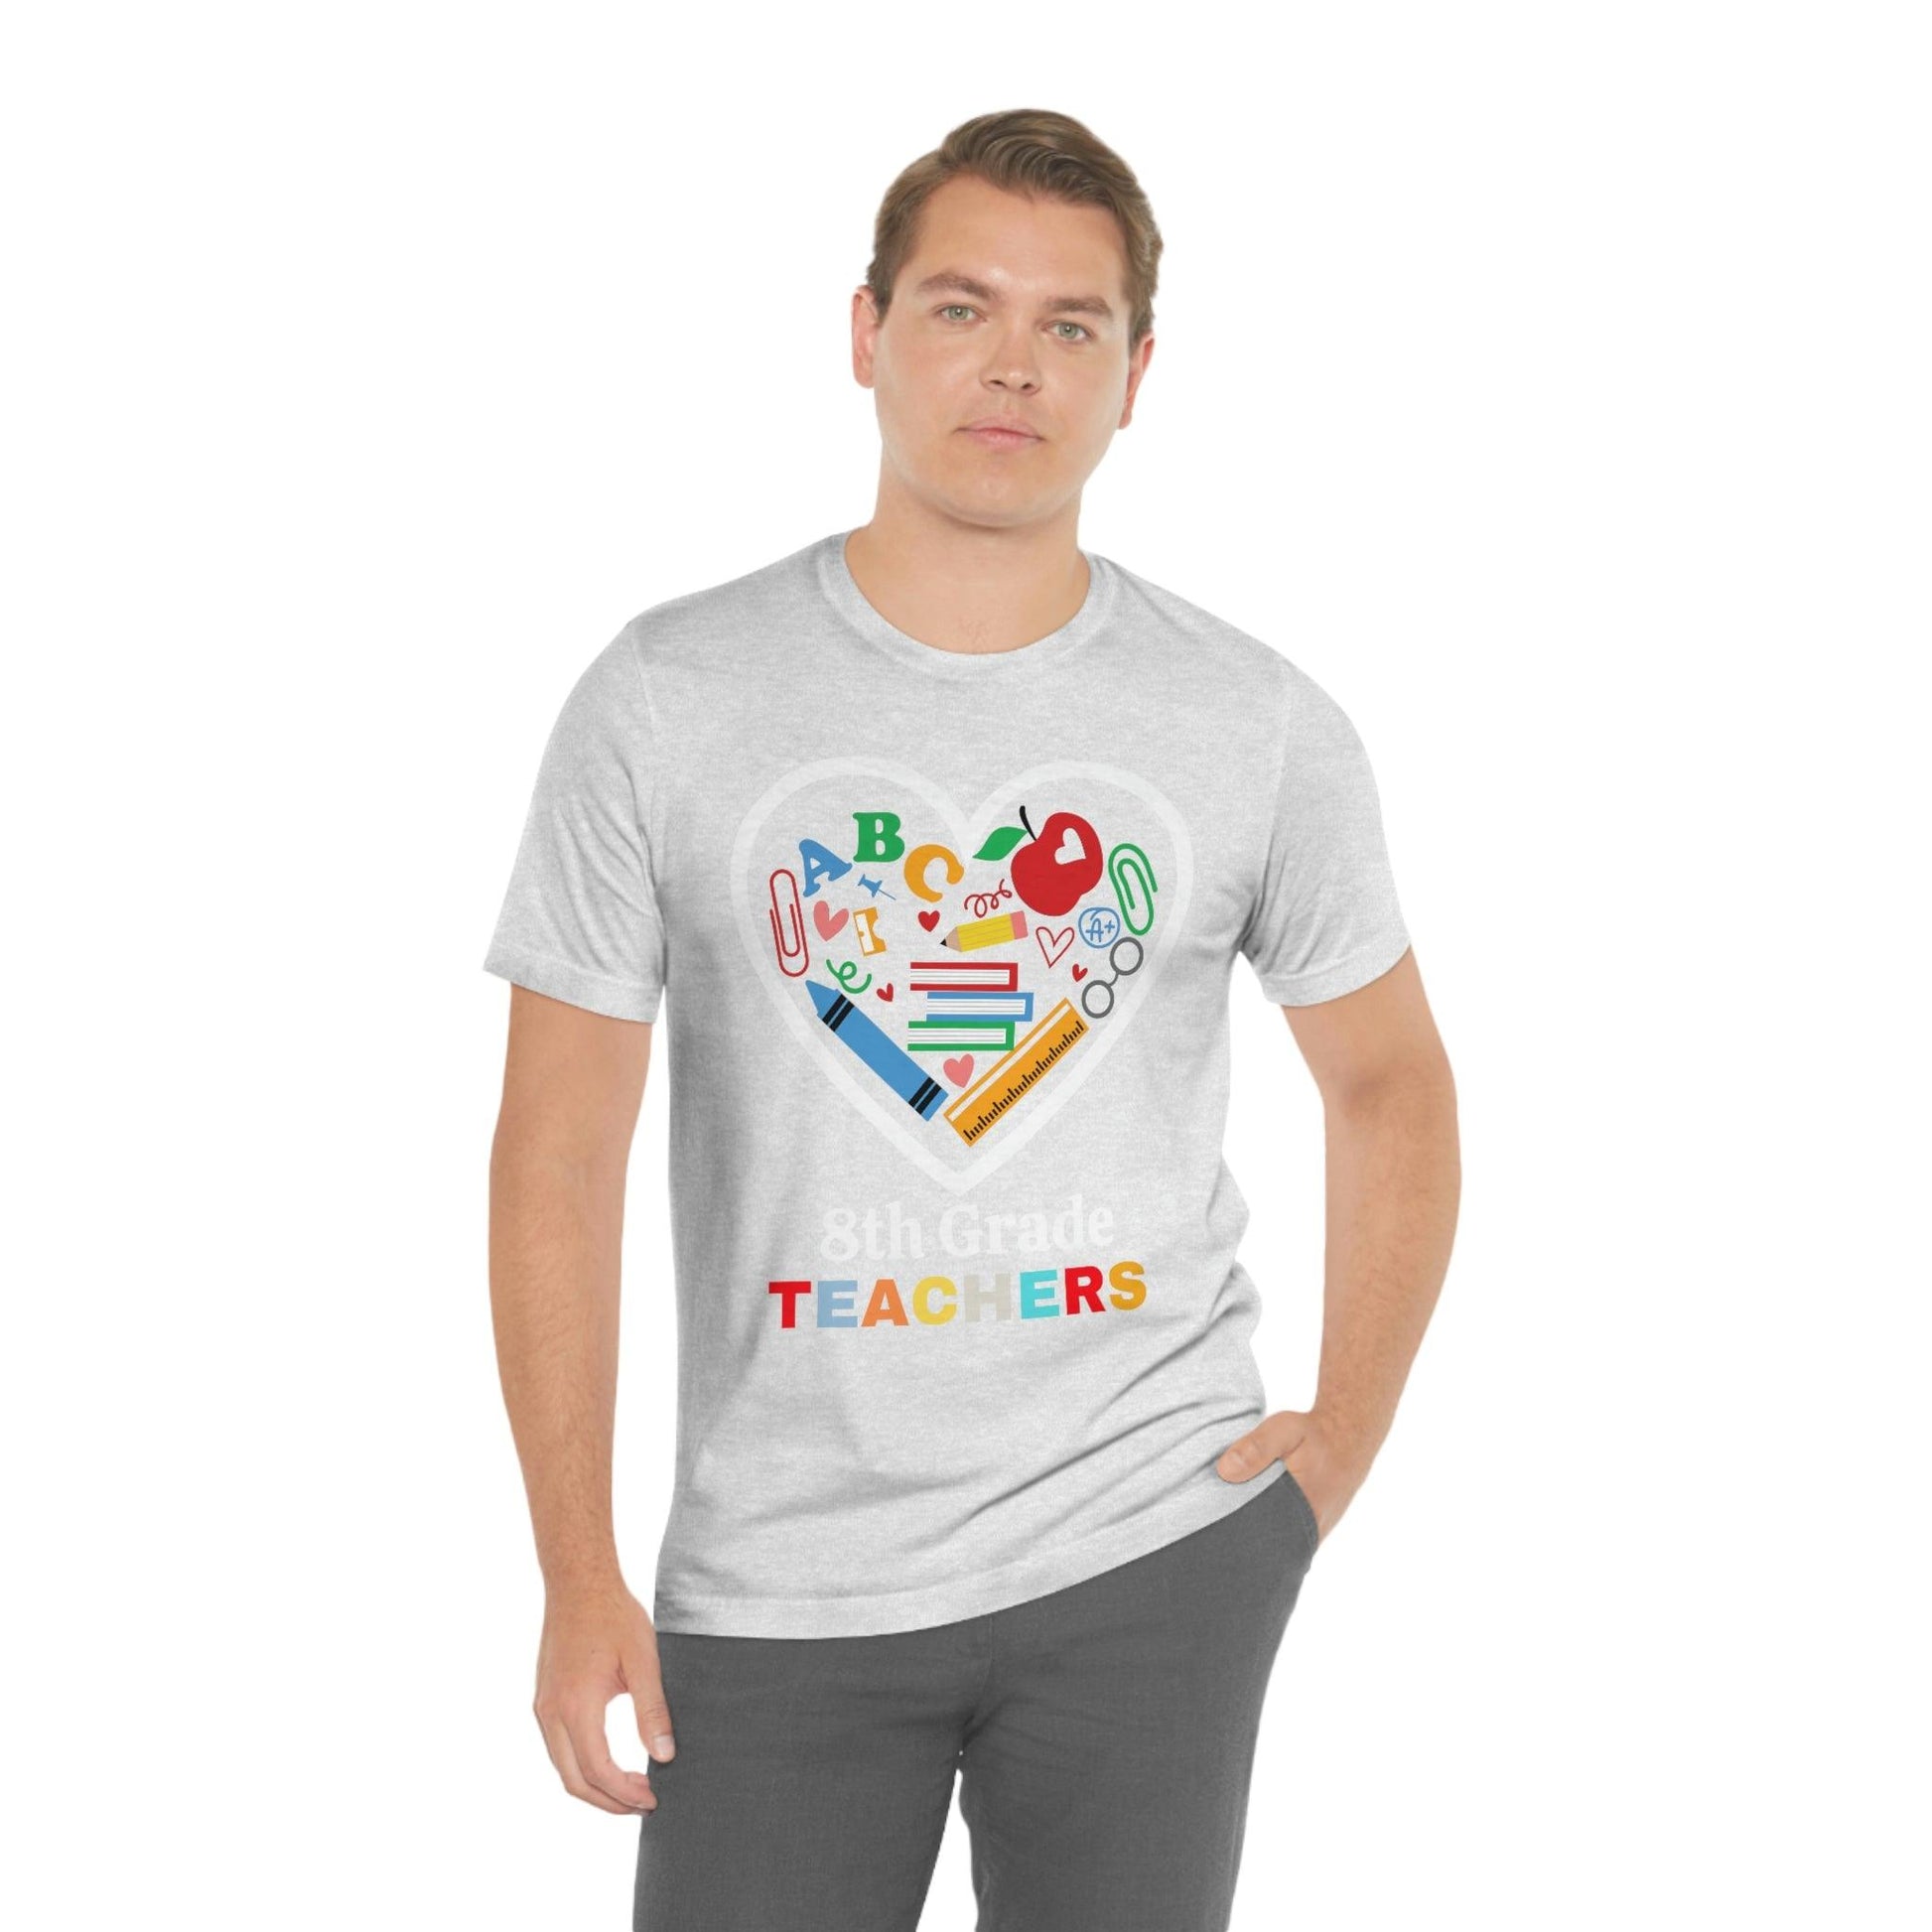 Love 8th Grade Teacher Shirt - Teacher Appreciation Shirt - Gift for Teachers - 8th Grade shirt - Giftsmojo